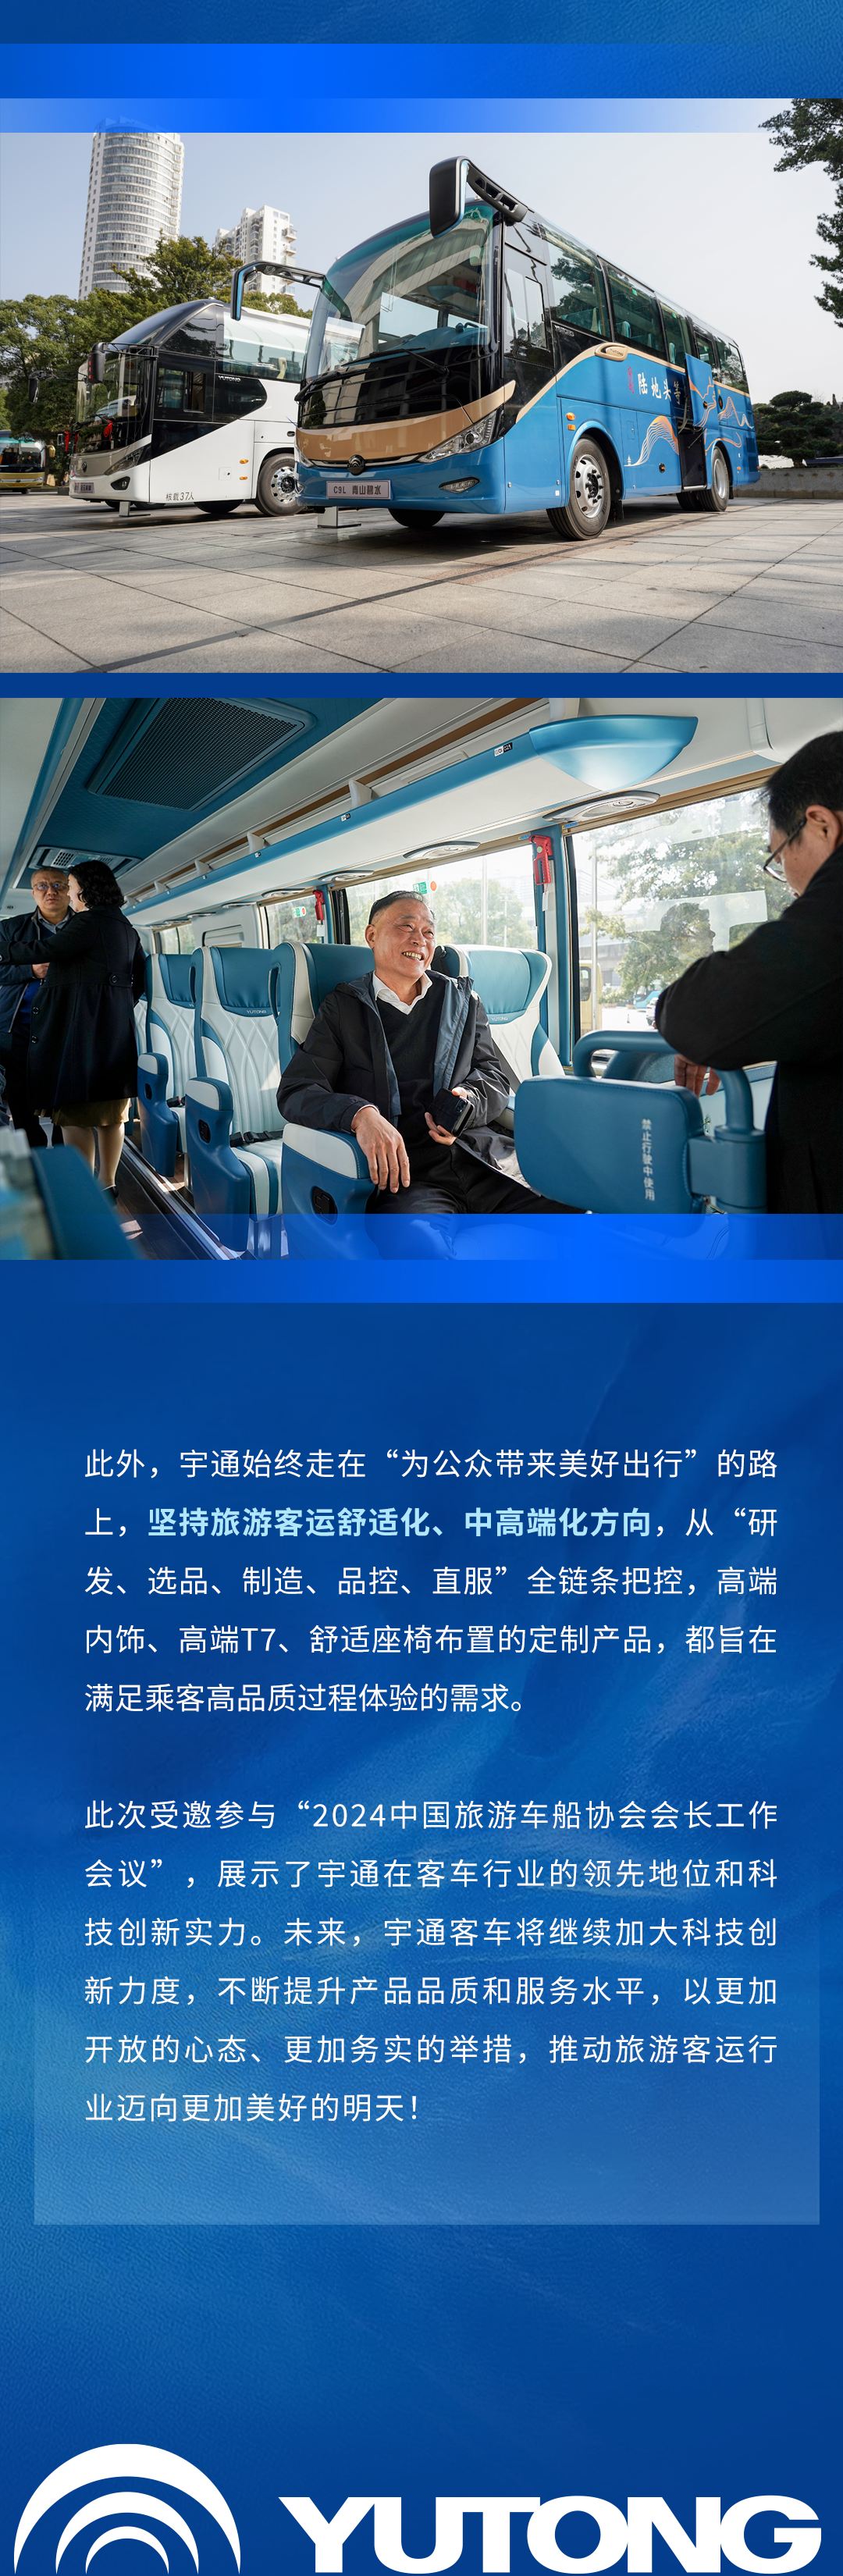 宇通客车应邀出席中国旅游车船协会会长工作会议